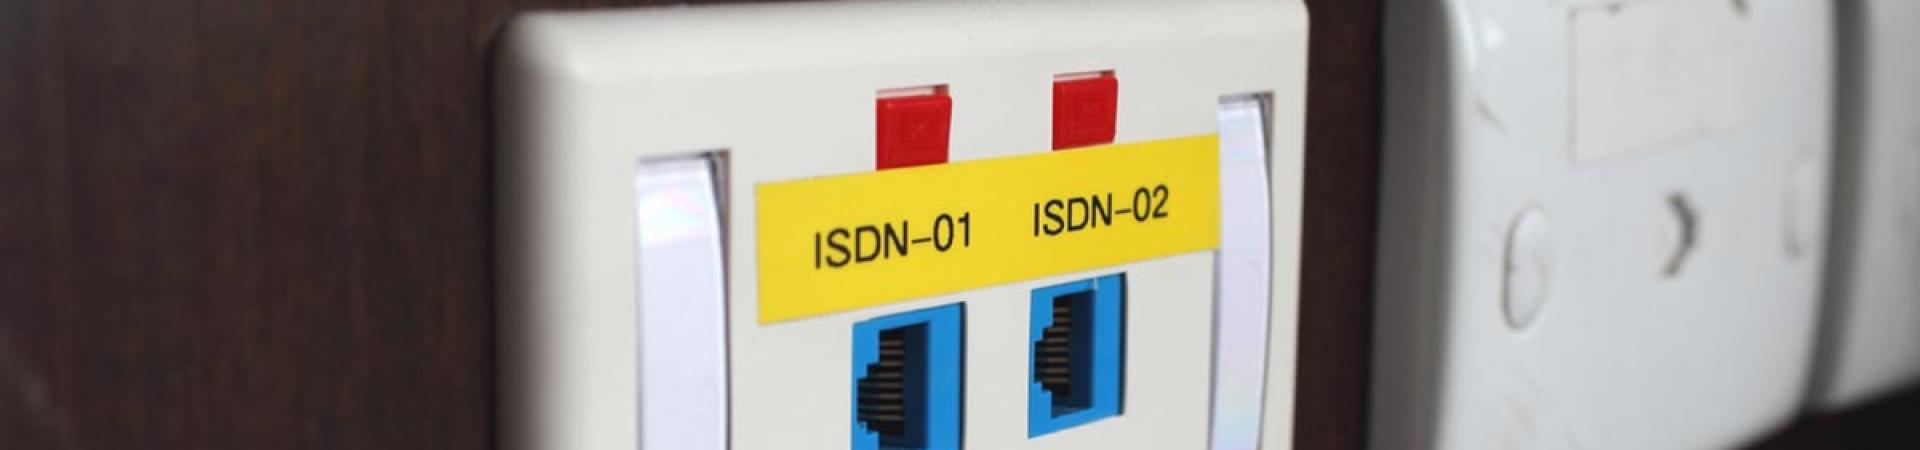 Vaarwel ISDN: Wat betekent dit voor uw alarmsysteem?